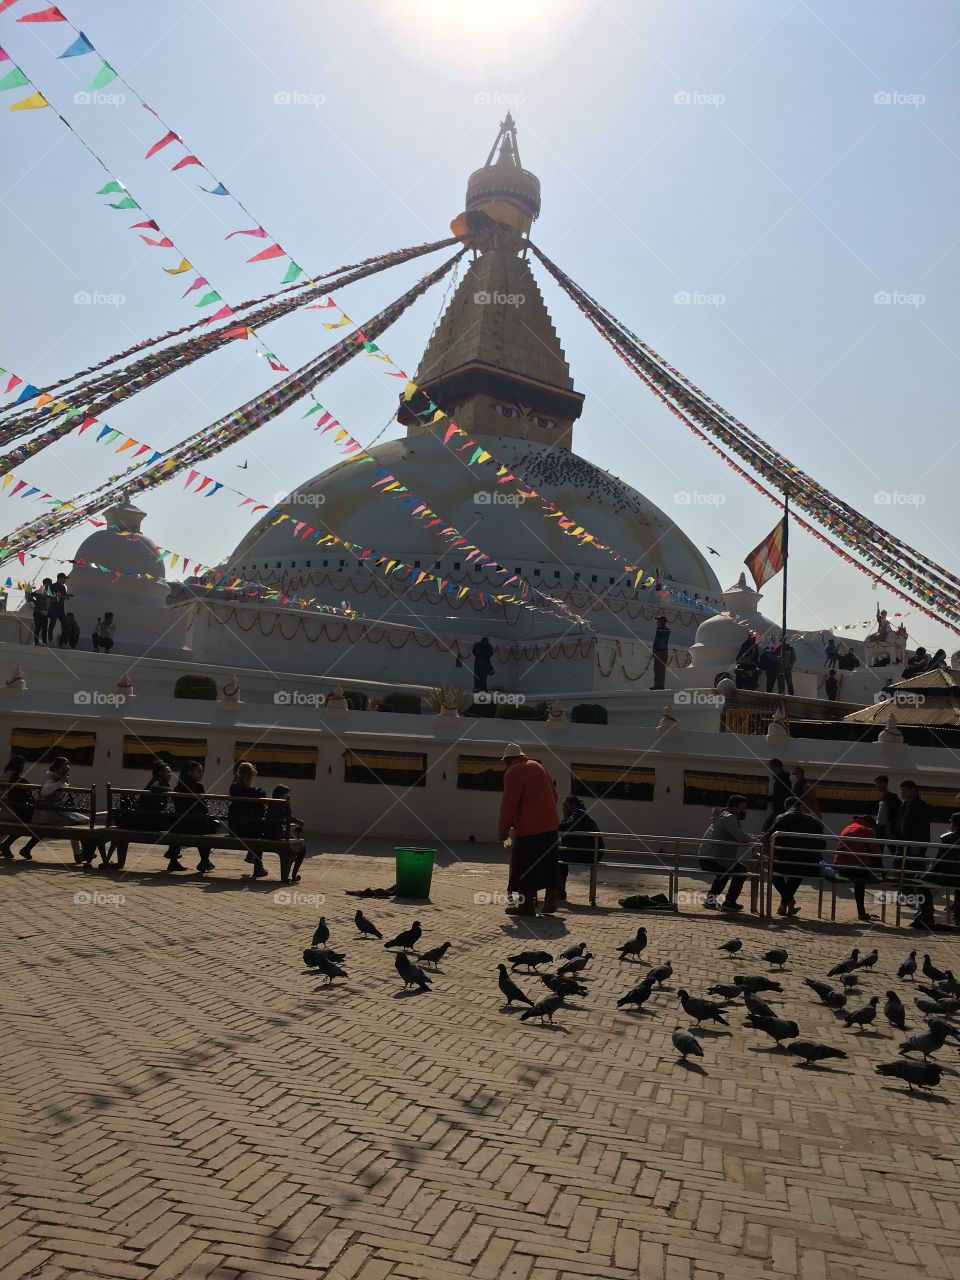 Amazing stupa